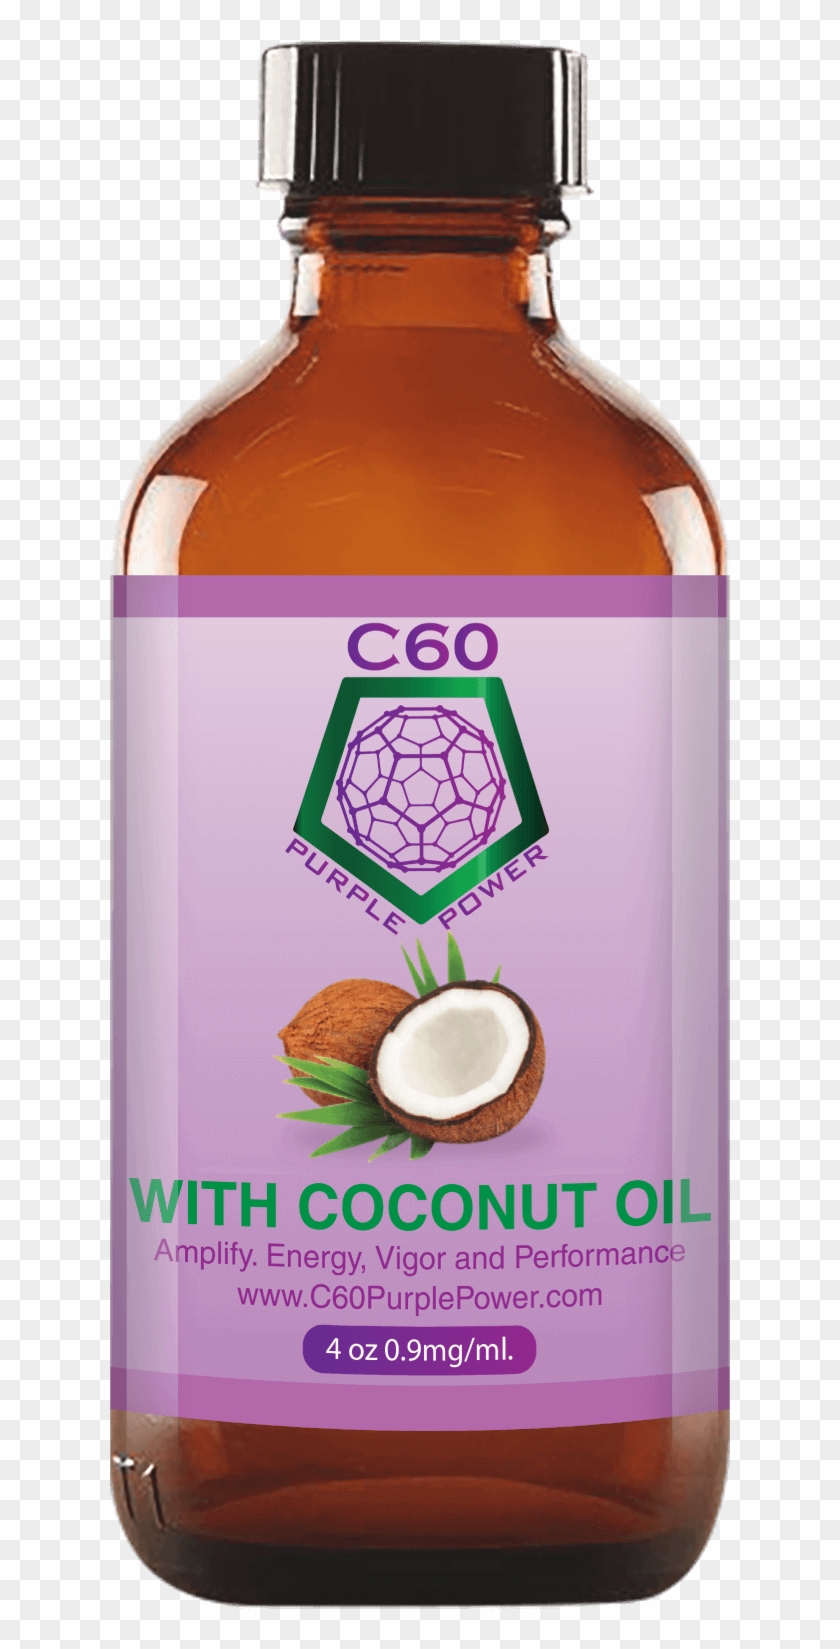 C60 Purple Power Coconut Oil 4 Oz - C60 Purple Power Clipart #5666768